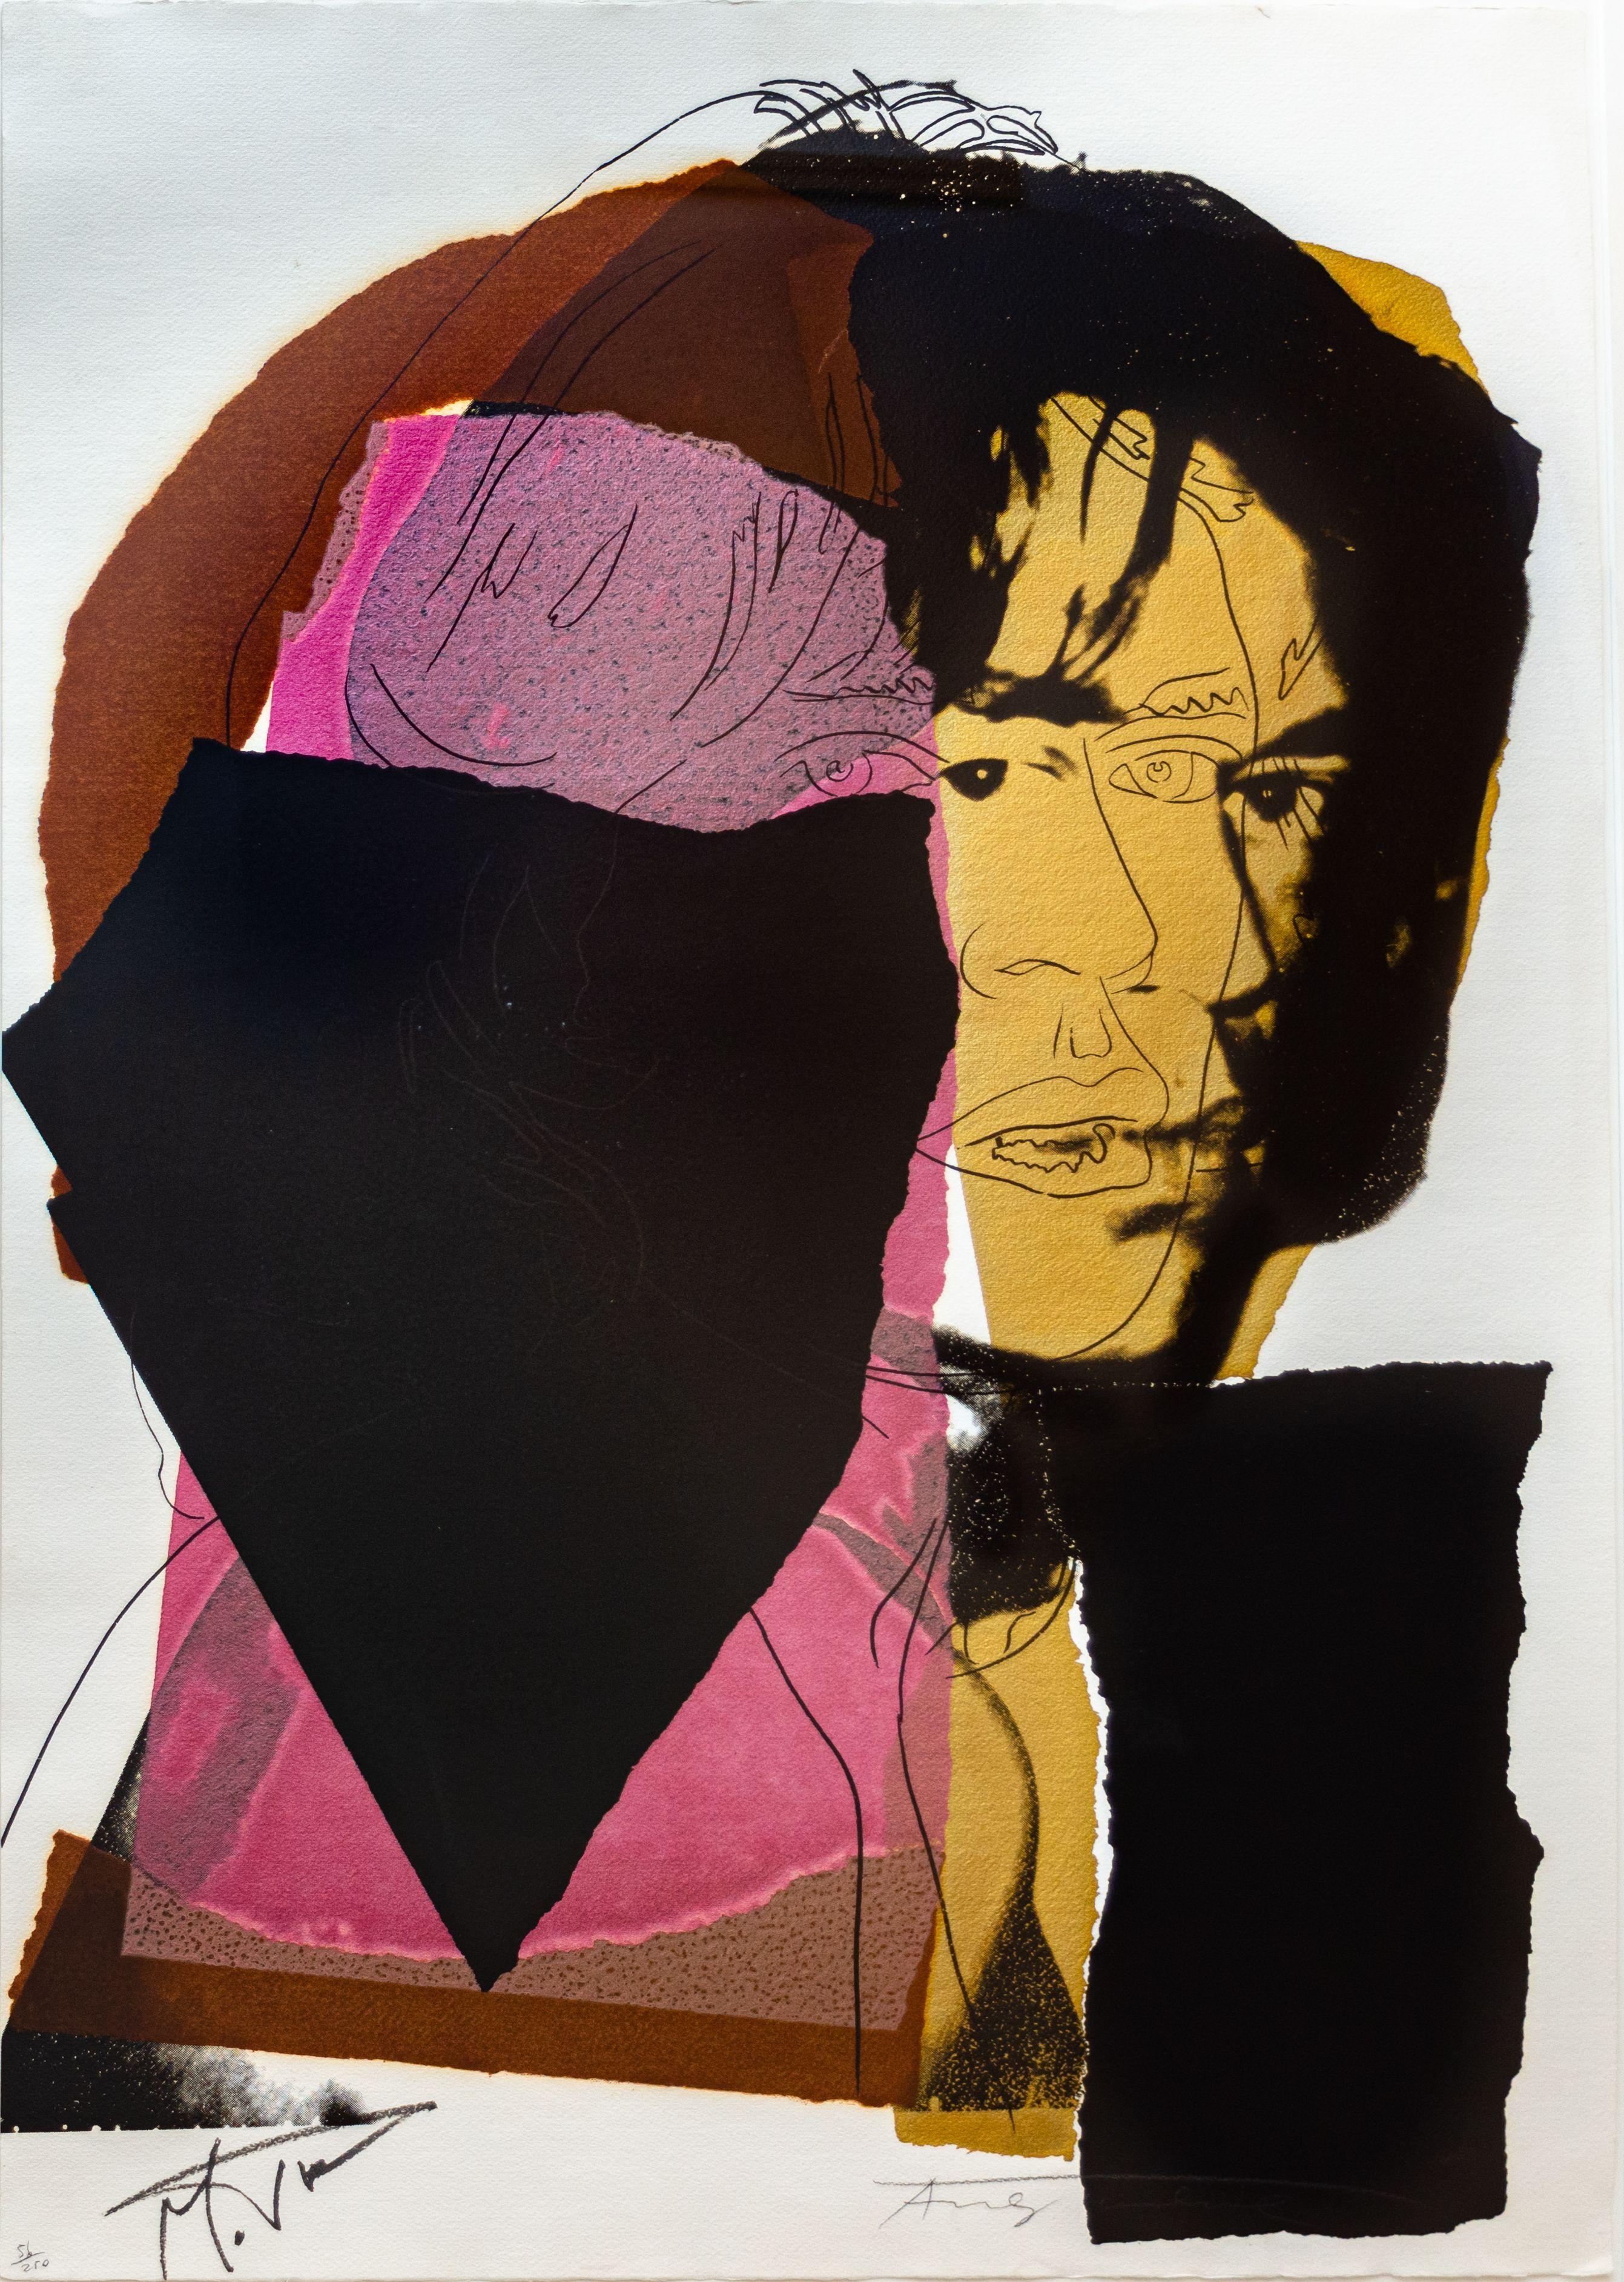 ANDY WARHOL (1928-1987)

Dieses "Mick Jagger"-Werk ist ein farbiger Siebdruck von 1975 auf Arches Aquarelle-Papier, der vom Künstler mit Bleistift mit "Andy Warhol" und vom Dargestellten mit Filzstift mit "Mick Jagger" signiert und nummeriert ist.